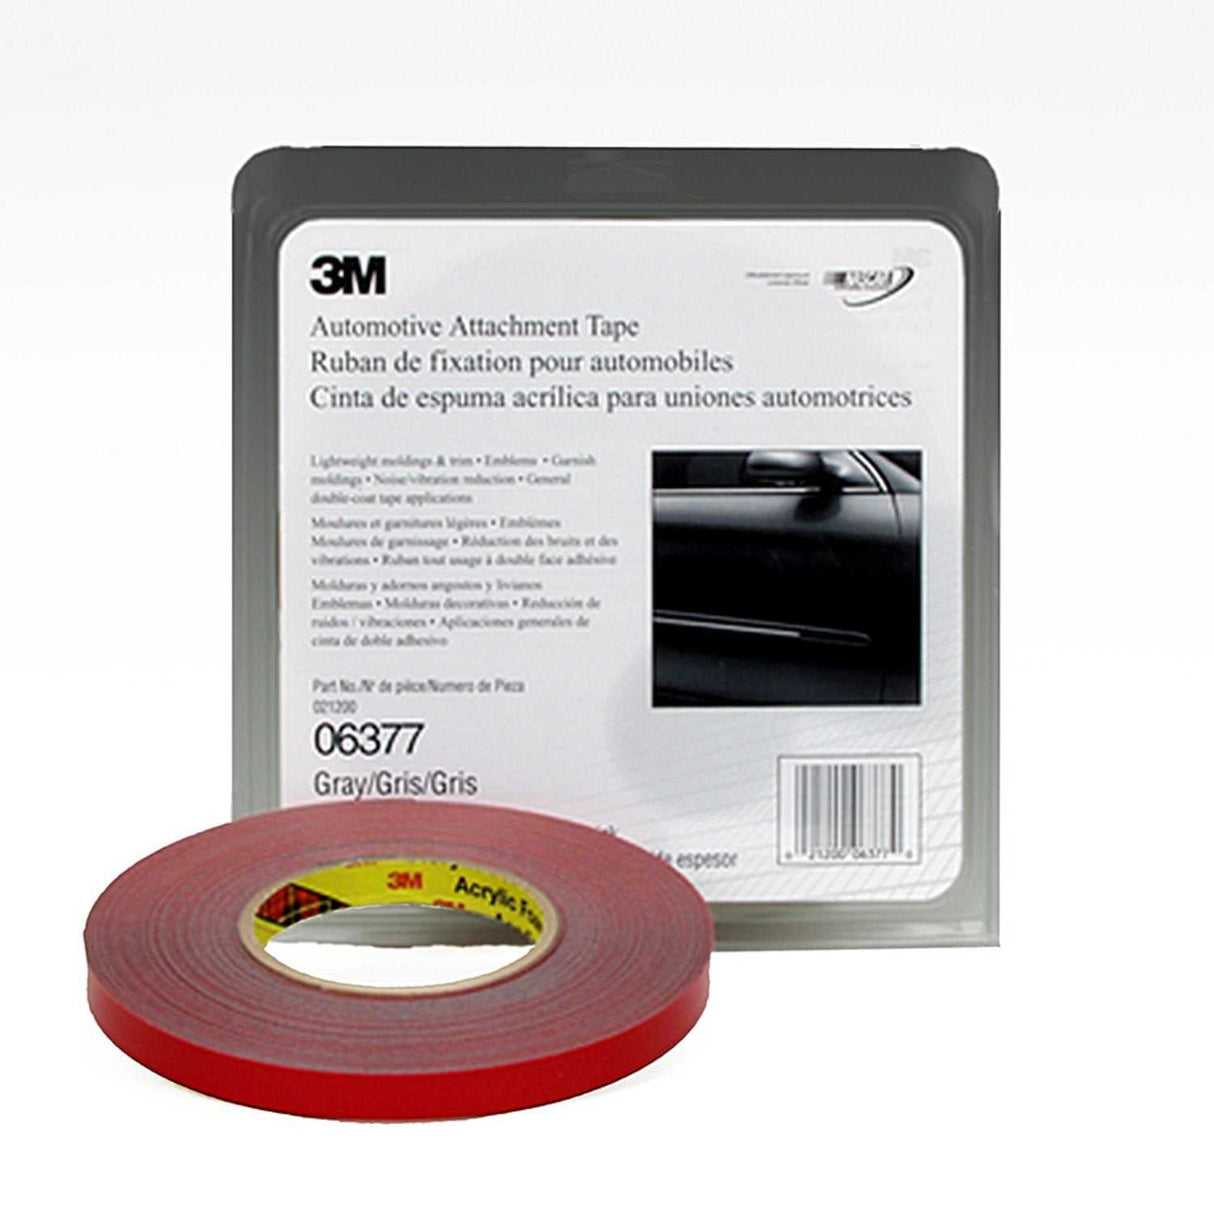 06377 3M Multi Purpose Tape Automotive Attachment